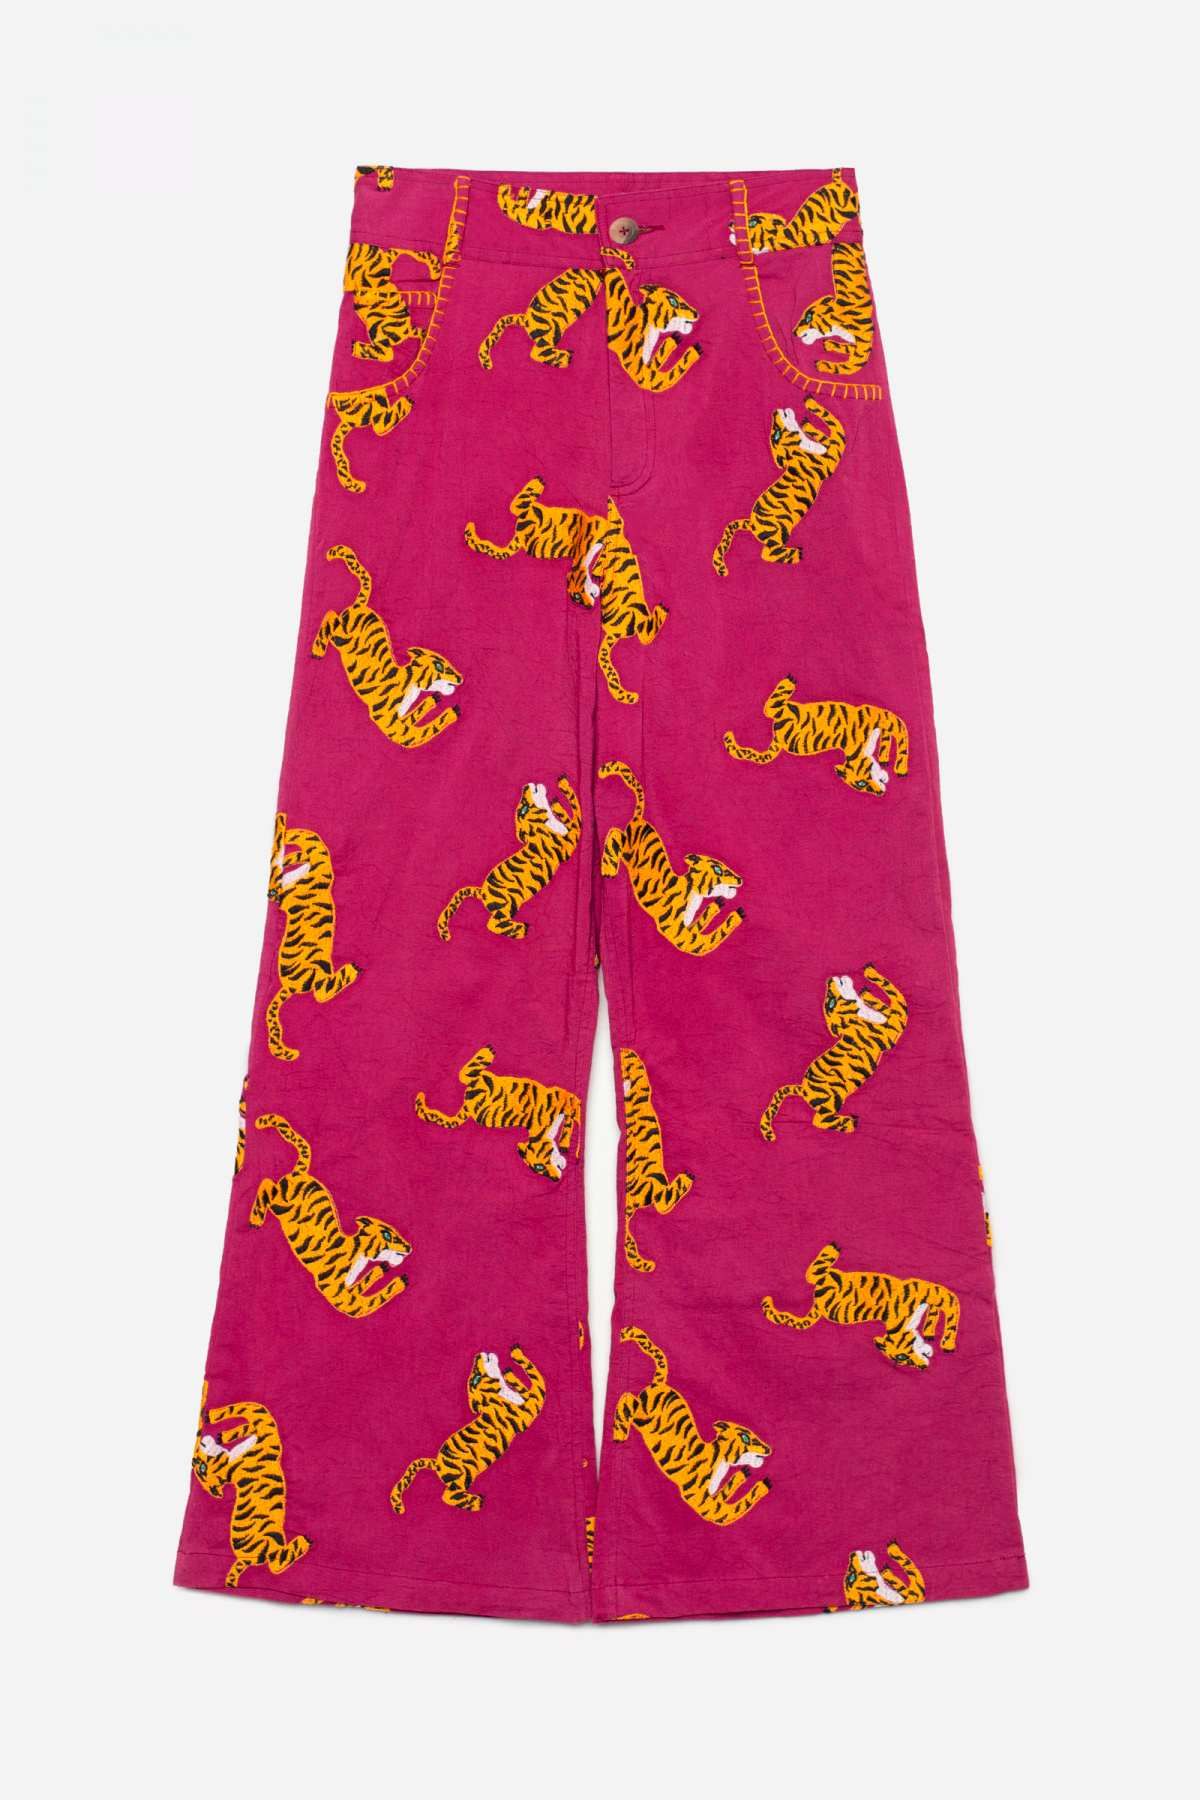 Pantalón estampado bordado tigres de Michonet